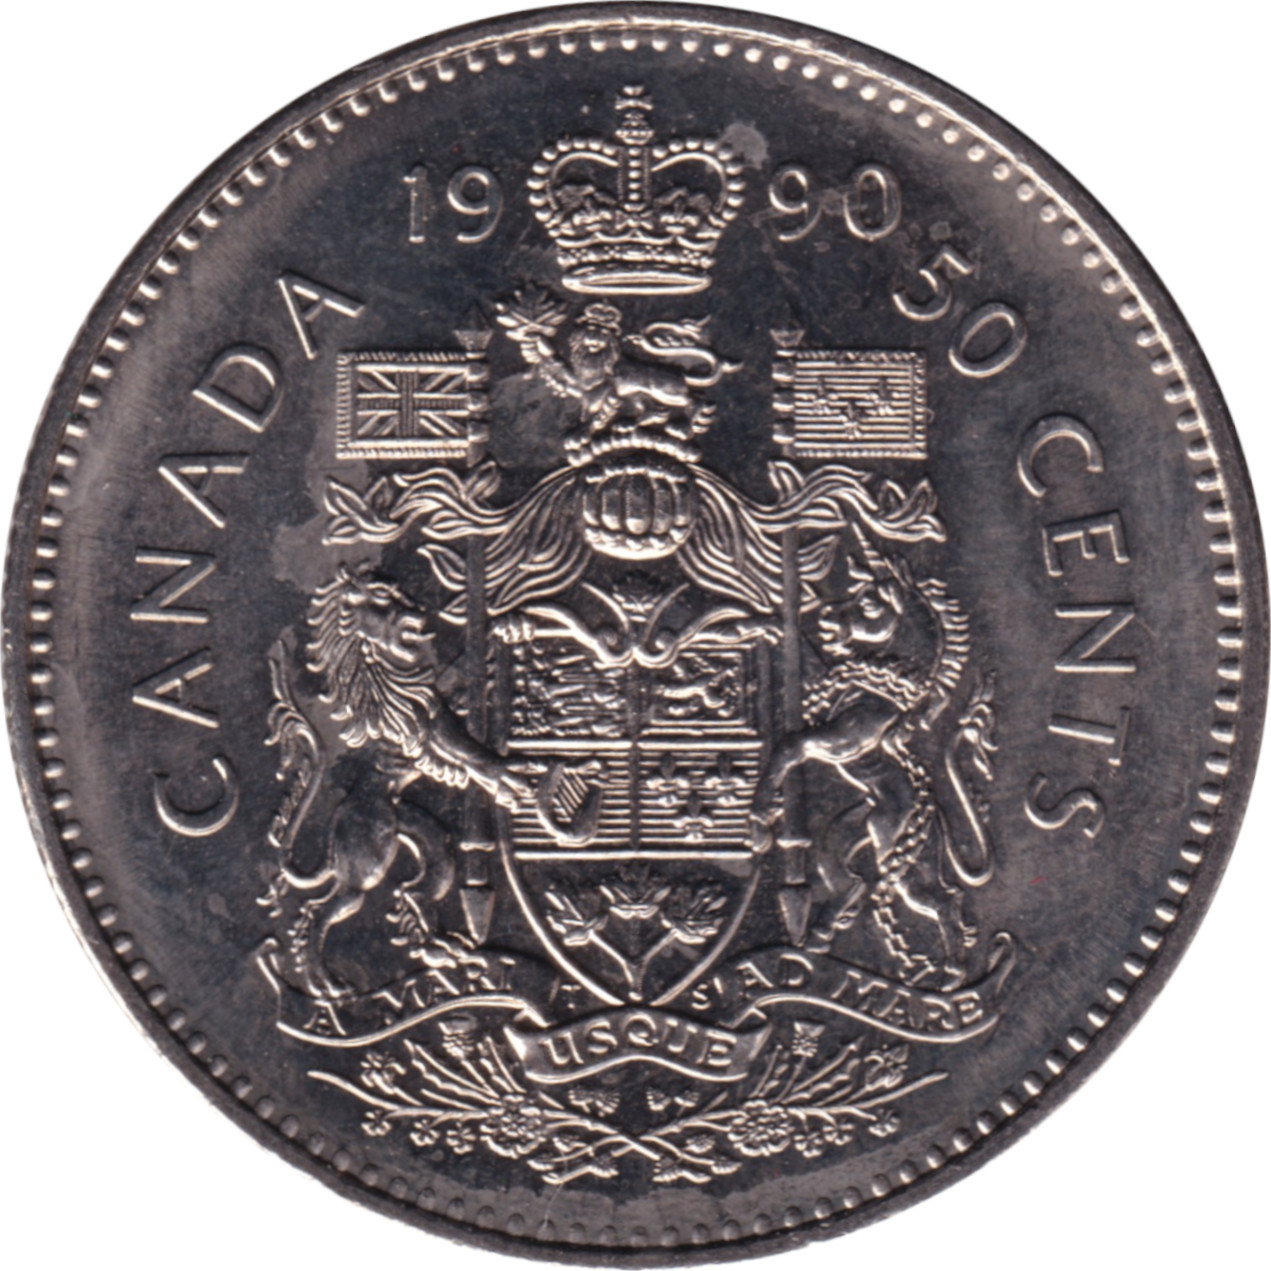 50 cents - Elizabeth II - Tête mature - Premières armoiries